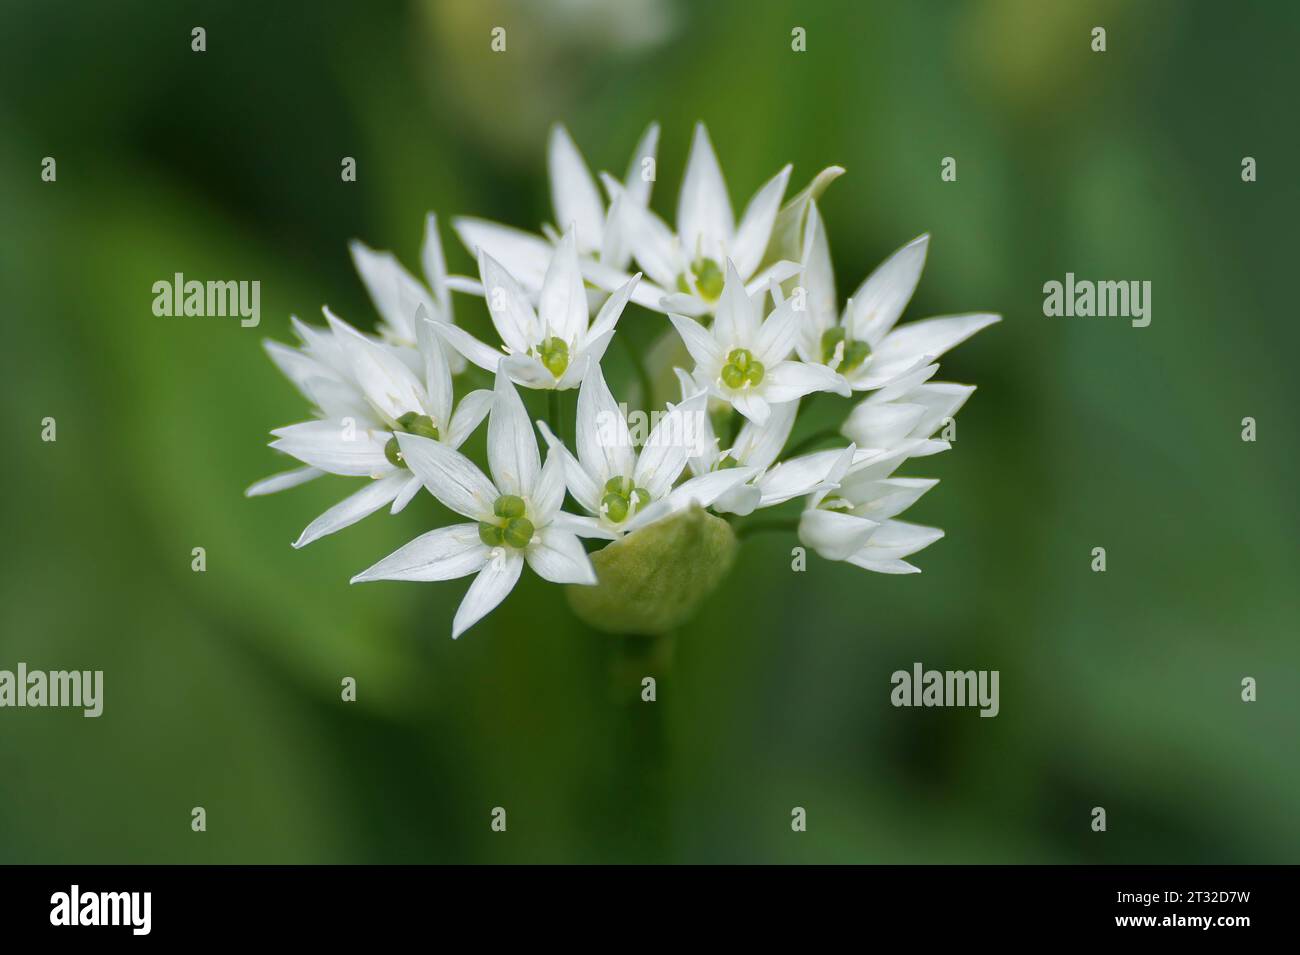 Primo piano naturale sul fragile fiore bianco brillante dell'aglio selvatico a foglia larga o del porro d'orso , Allium ursinum Foto Stock